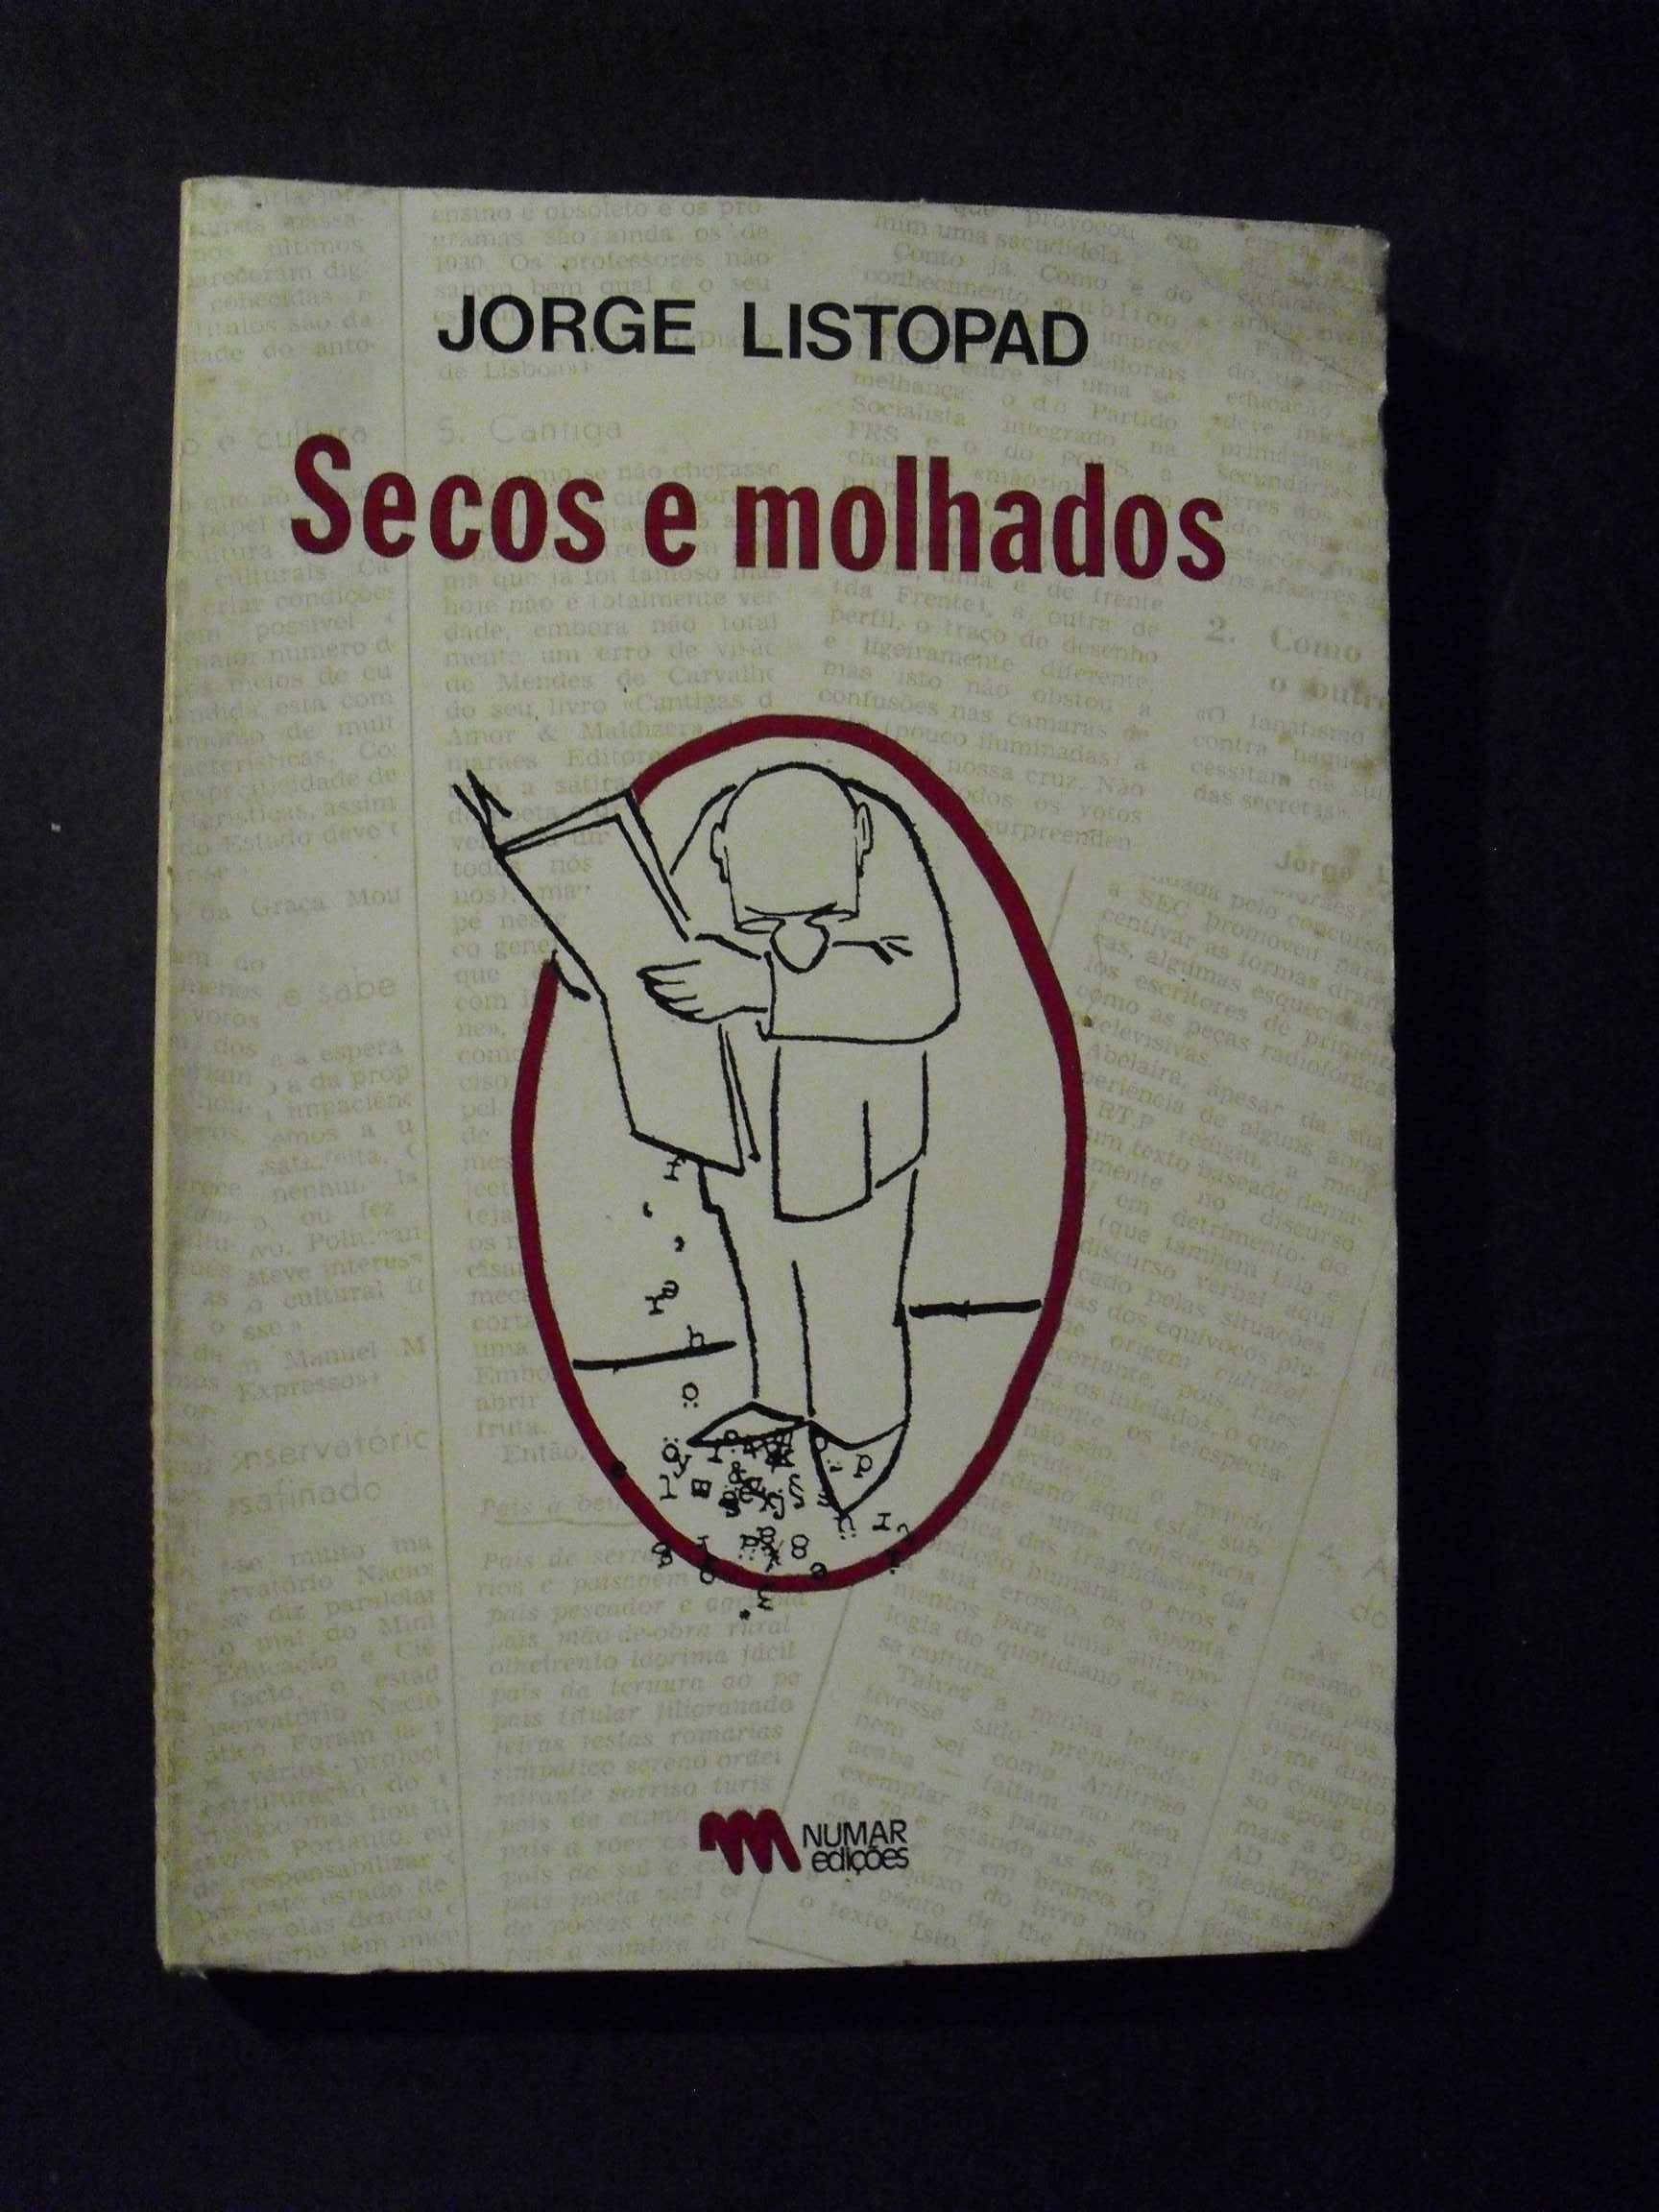 Listopad (Jorge);Secos e Molhados;Numar Edições,1ª Edição.1981